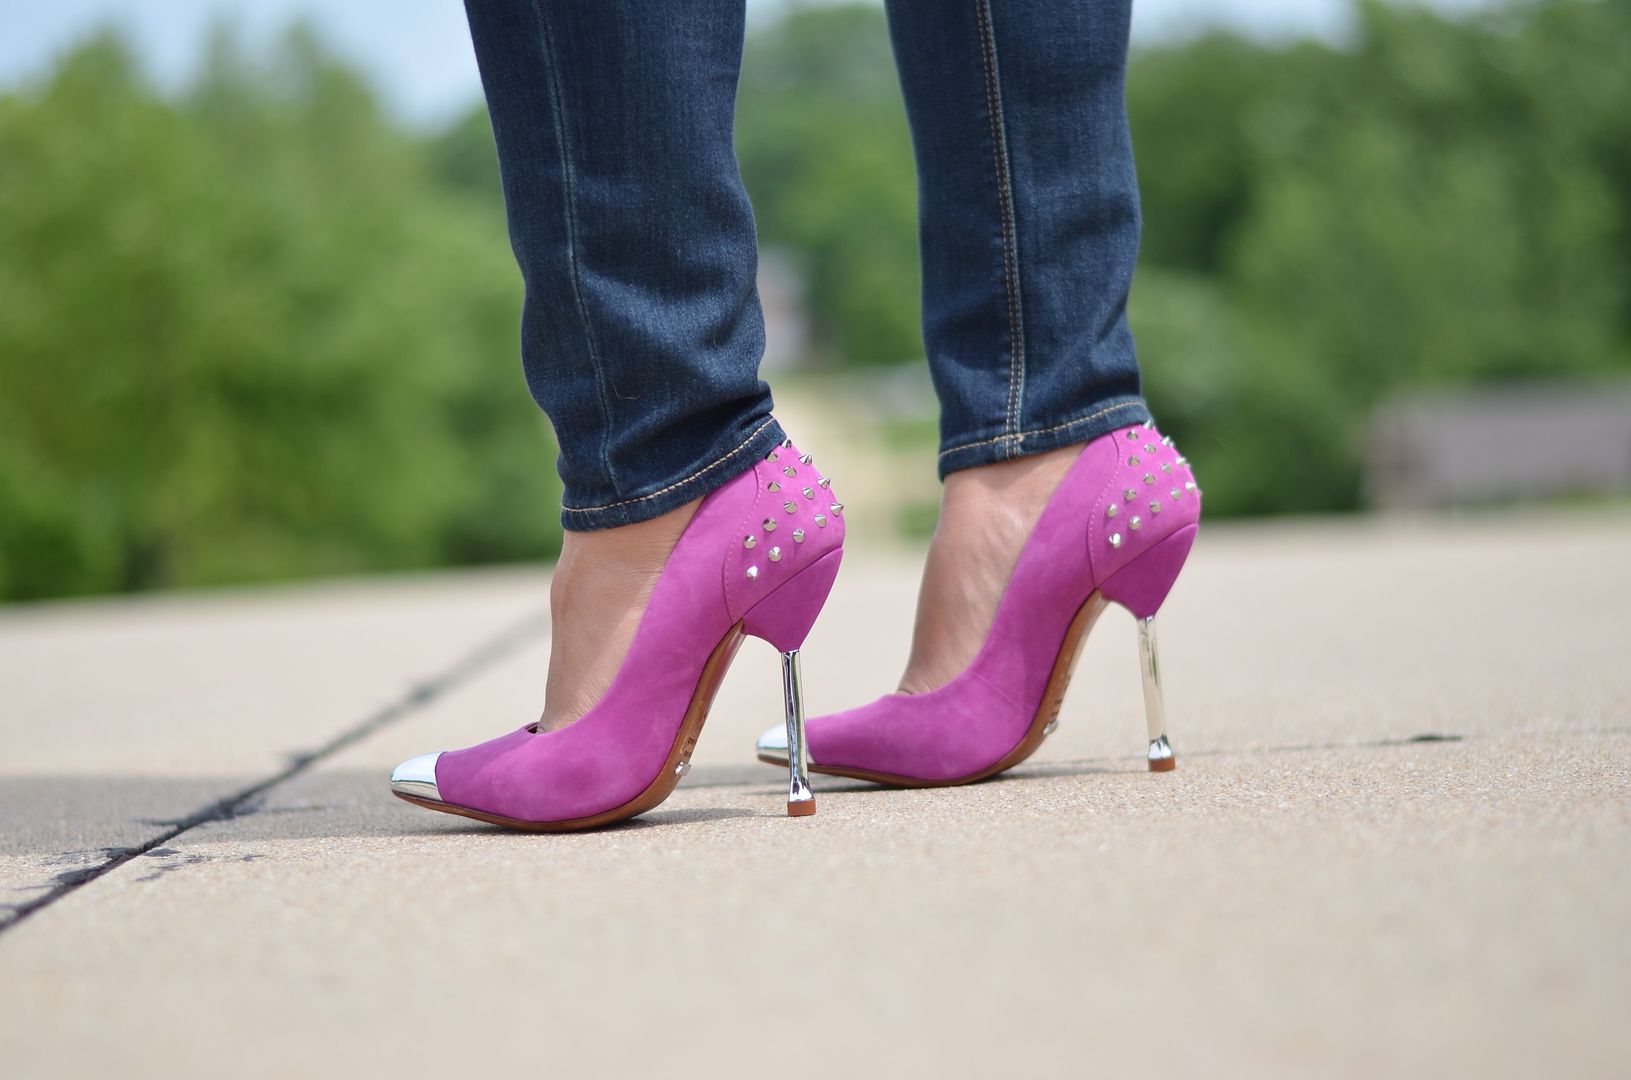 More Pieces of Me | St. Louis Fashion Blog: Shoe Addict